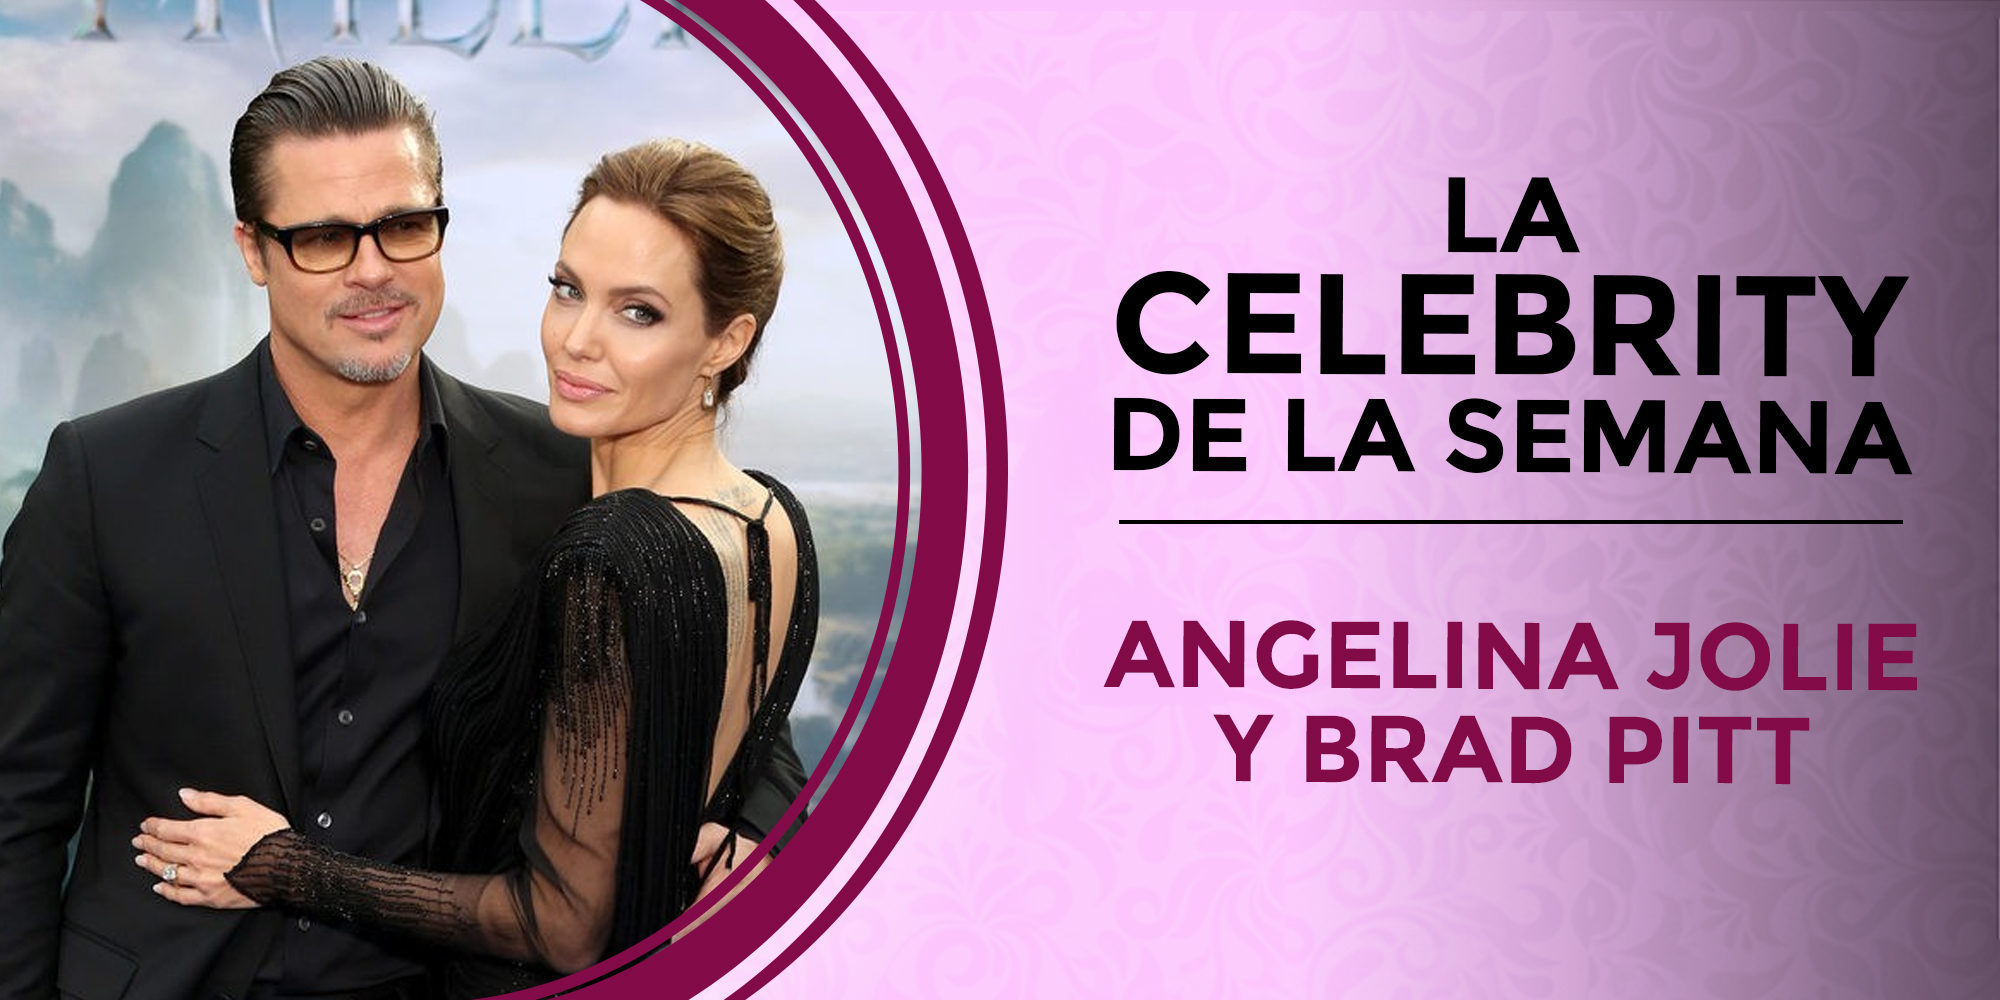 Brad Pitt y Angelina Jolie, las celebrities de la semana por su divorcio sorpresa